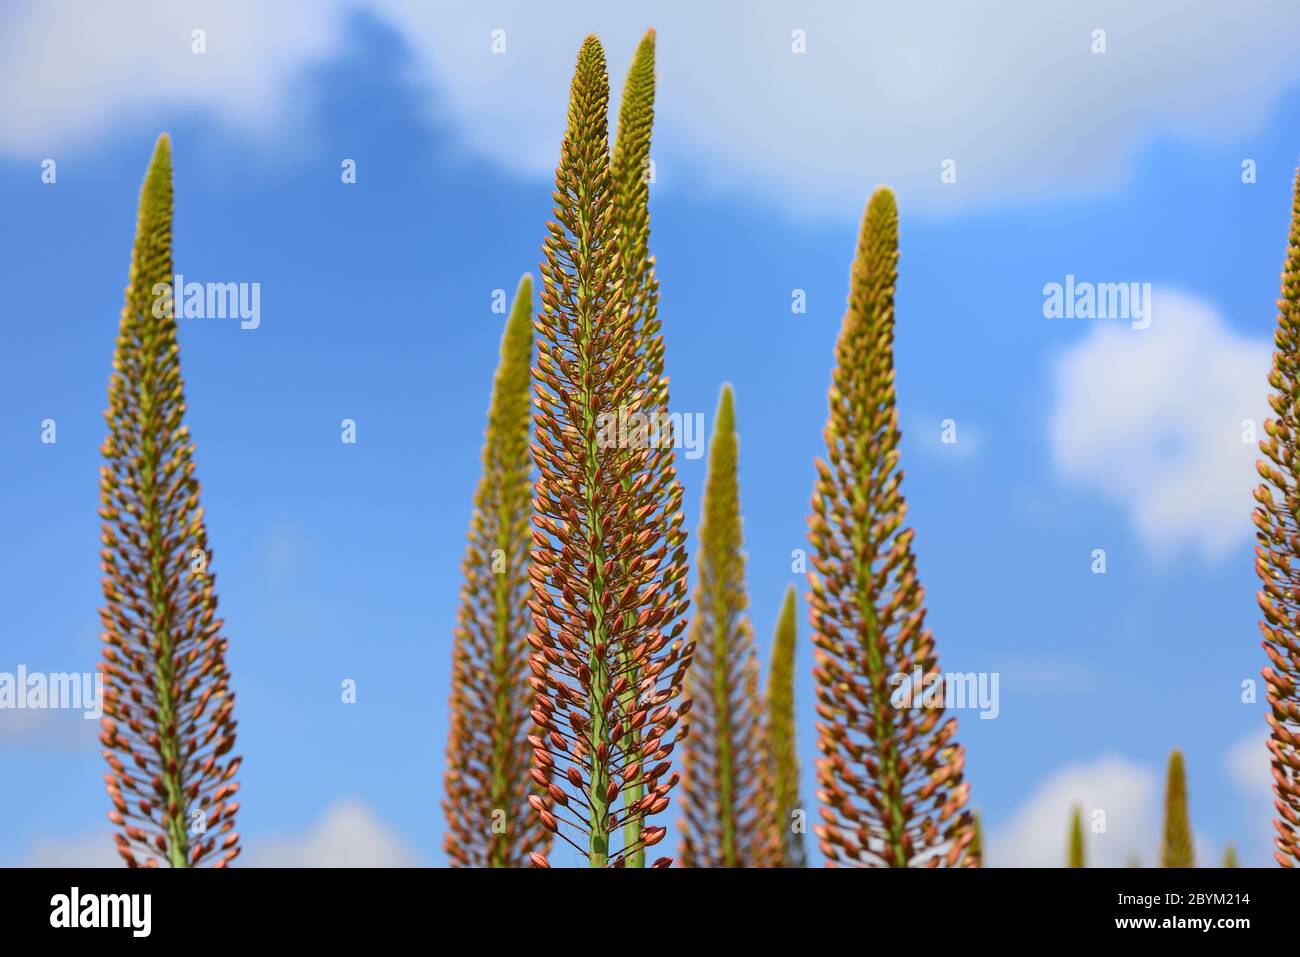 Le lunghe e alte piante dell'Eremuro, o gigantesca candela di steppa, si levano fianco a fianco contro un cielo blu con le nuvole Foto Stock